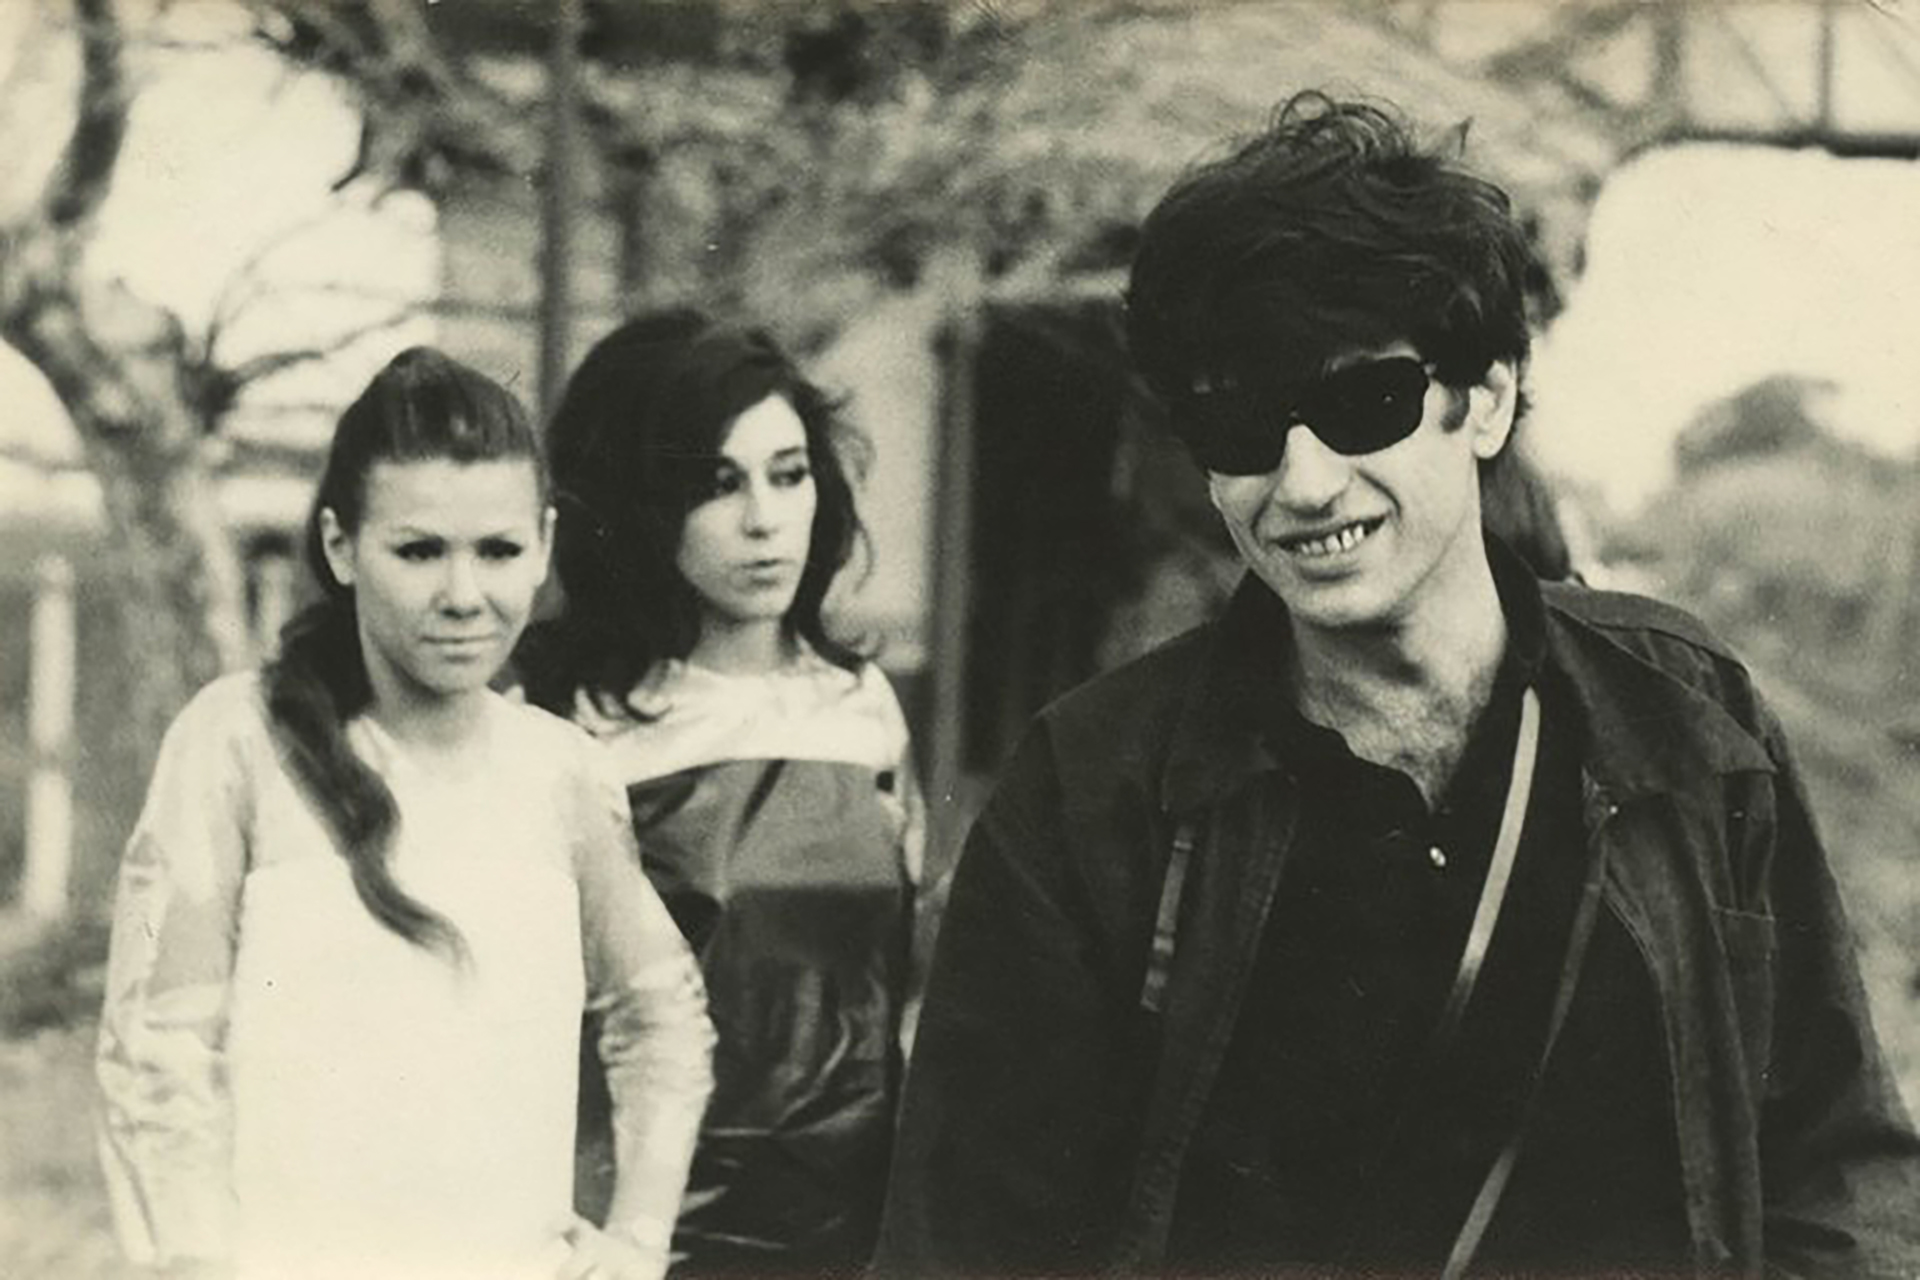 Oscar Masotta durante "El helicóptero", de 1967, con Cloe Masotta y Susana Lijtmaer